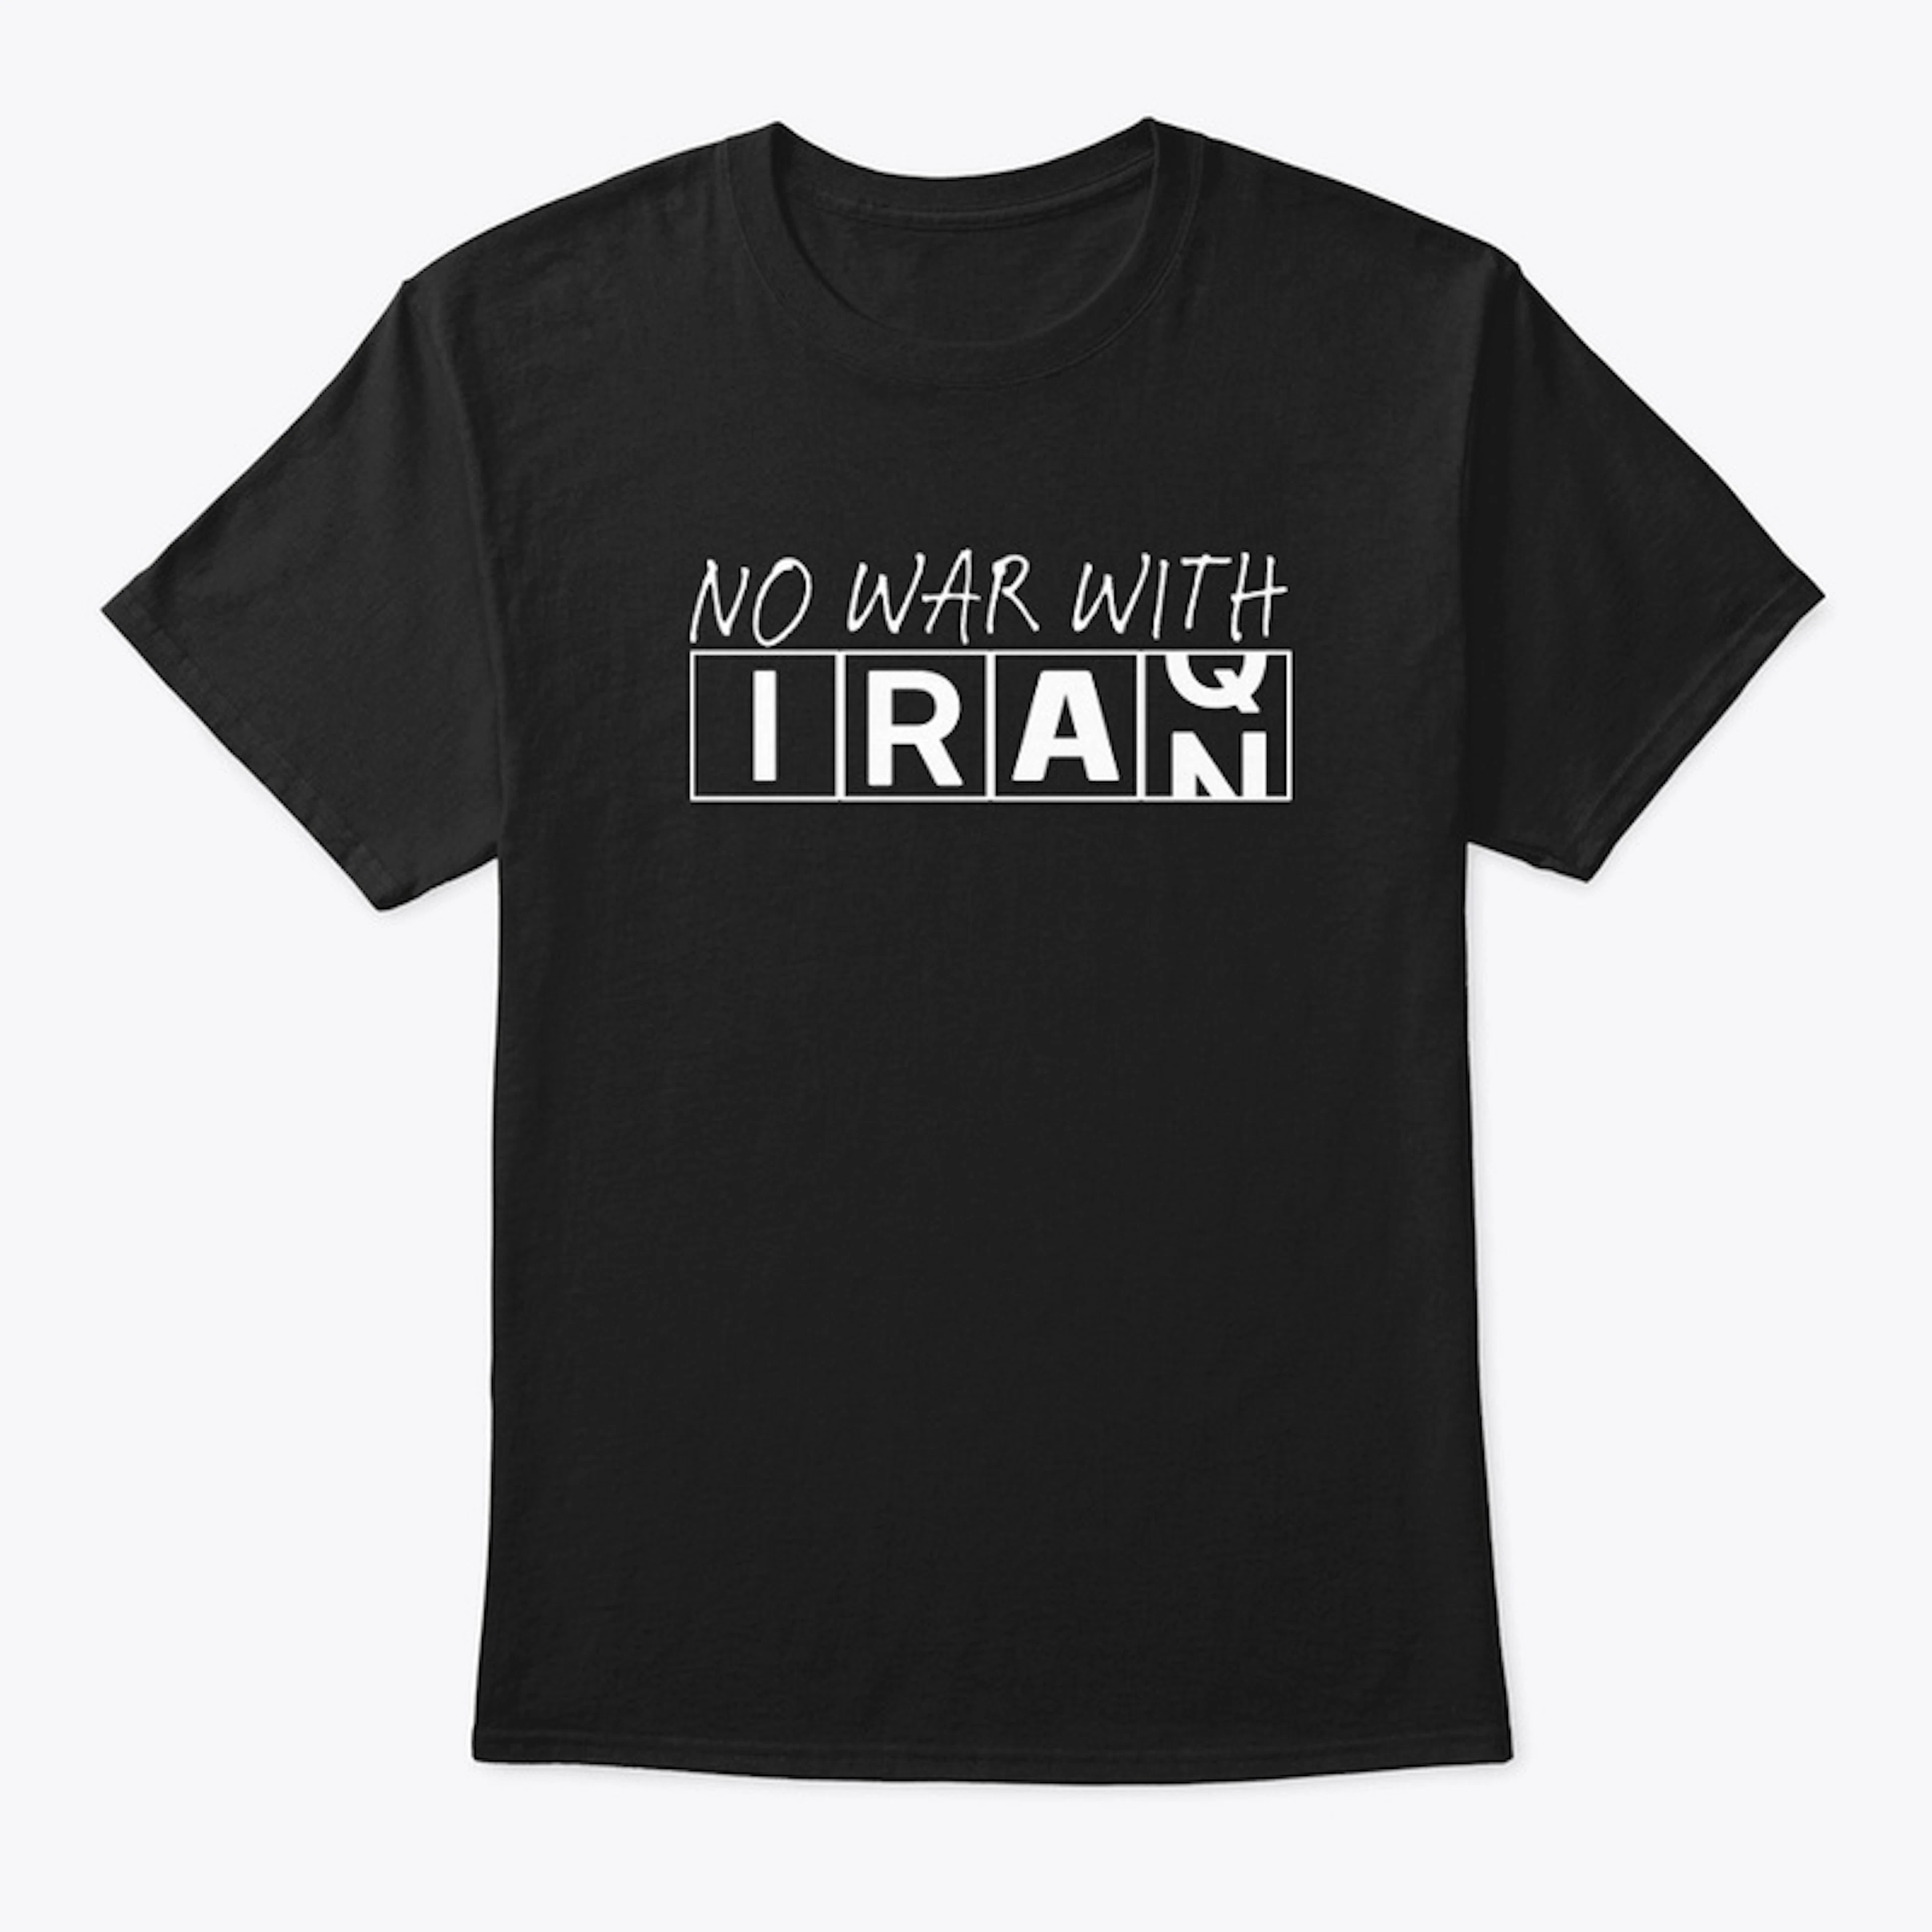 NO WAR WITH IRAN